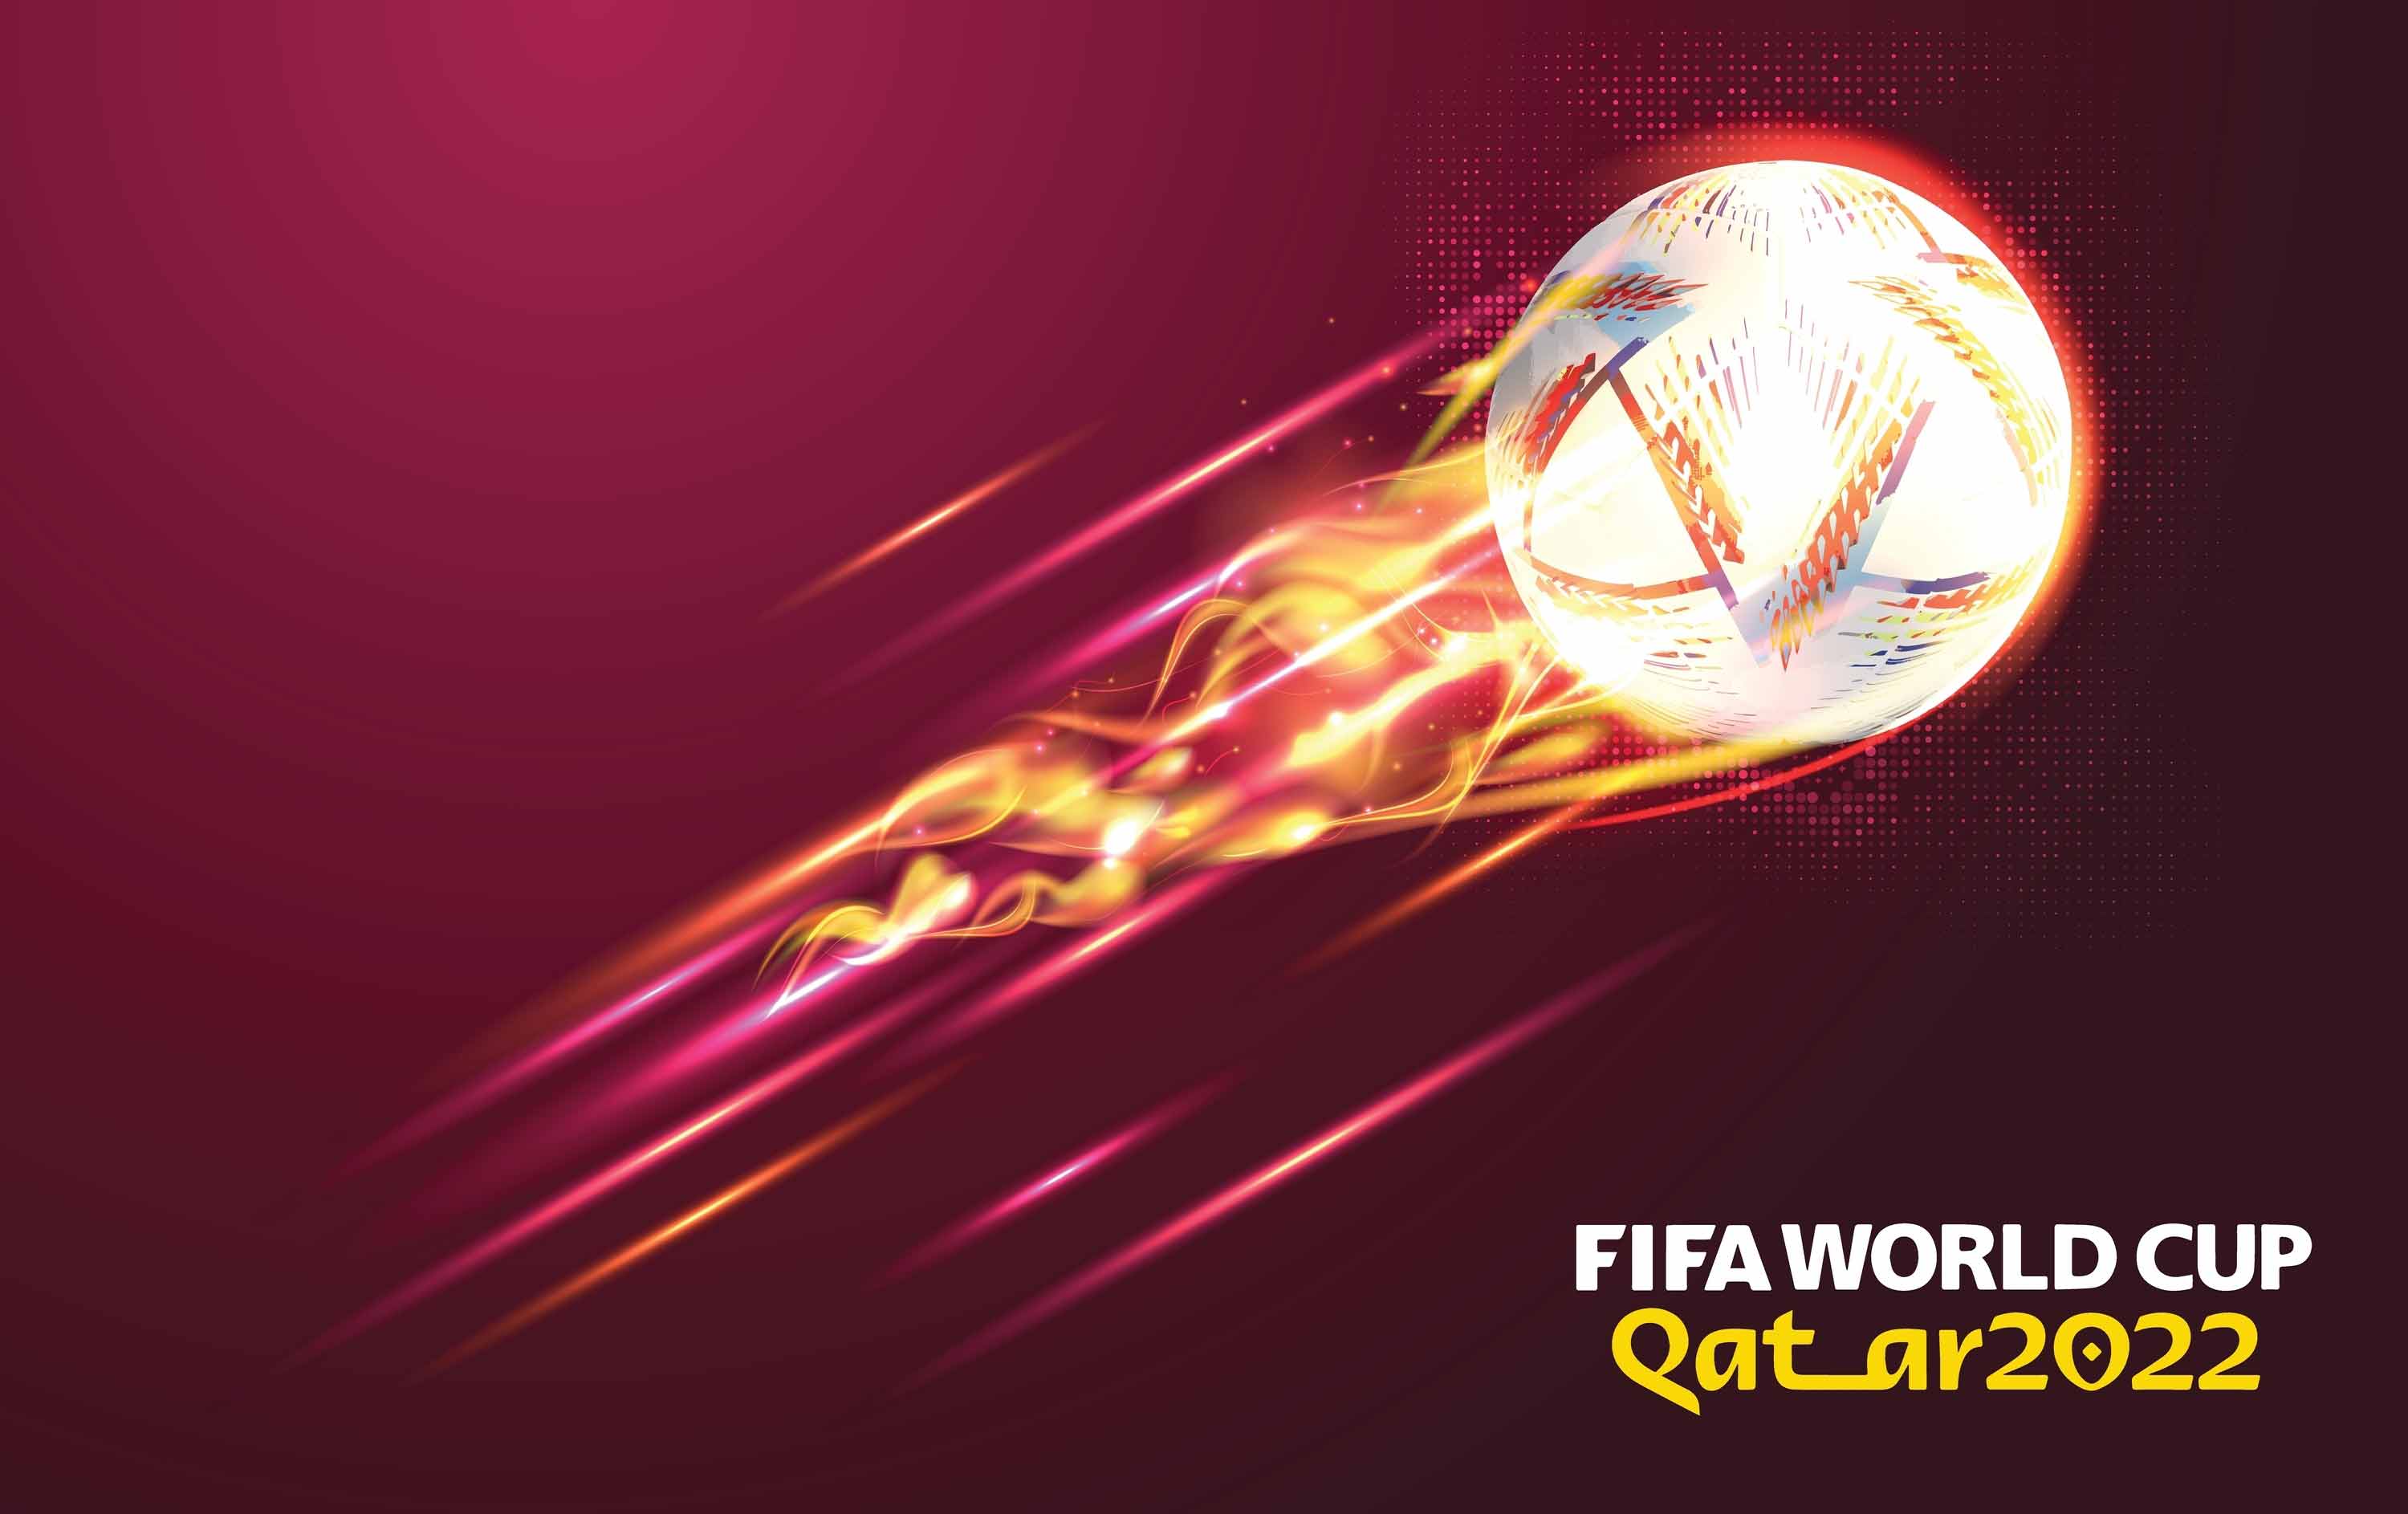 Telemundo drops World Cup ad campaign for Qatar 2022